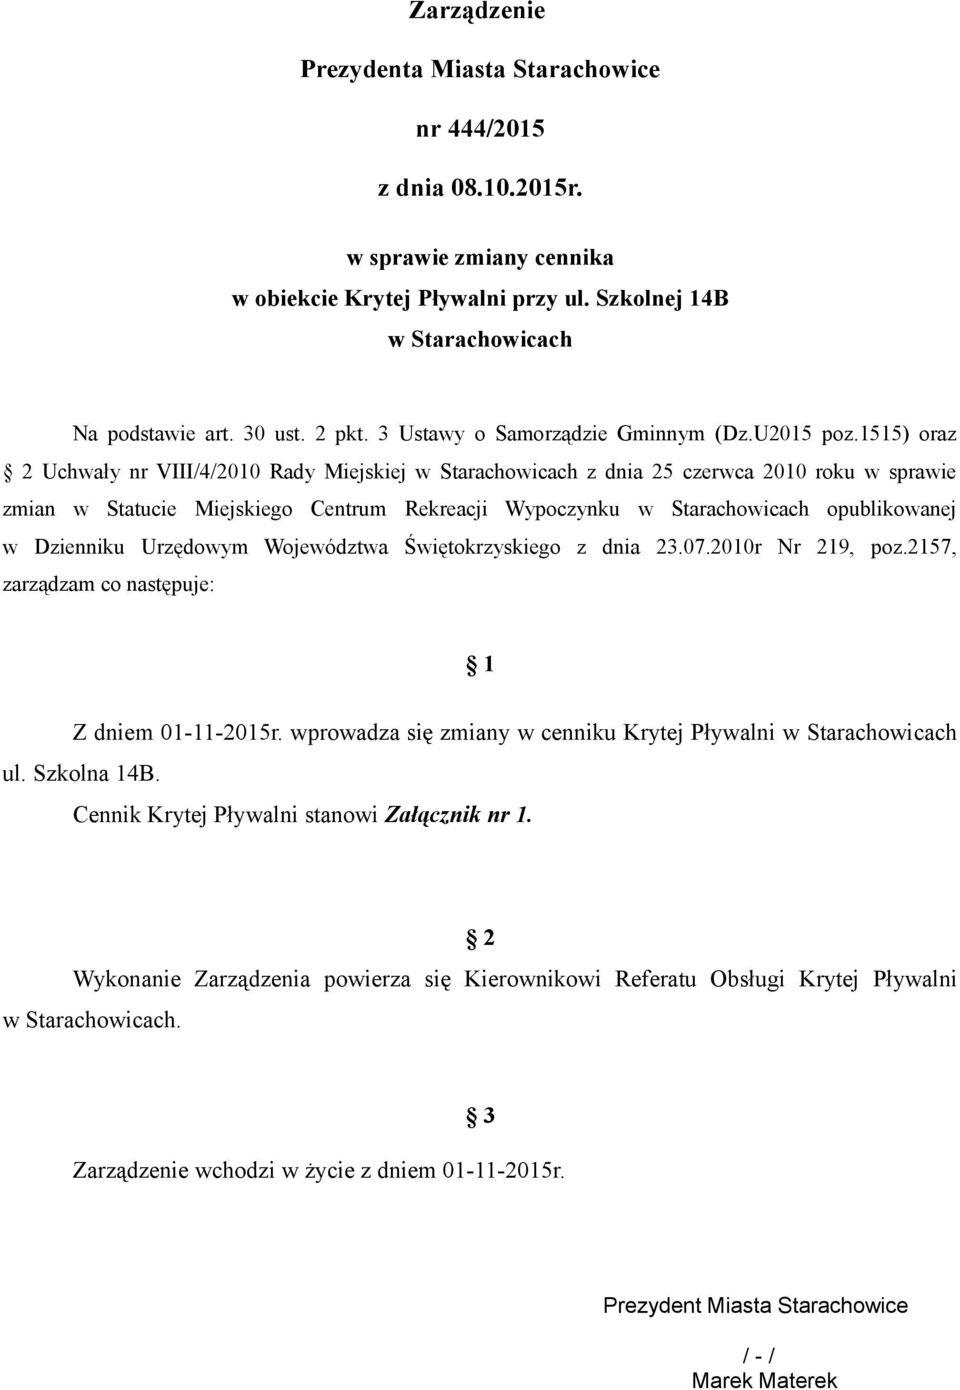 1515) oraz 2 Uchwały nr VIII/4/2010 Rady Miejskiej w Starachowicach z dnia 25 czerwca 2010 roku w sprawie zmian w Statucie Miejskiego Centrum Rekreacji Wypoczynku w Starachowicach opublikowanej w